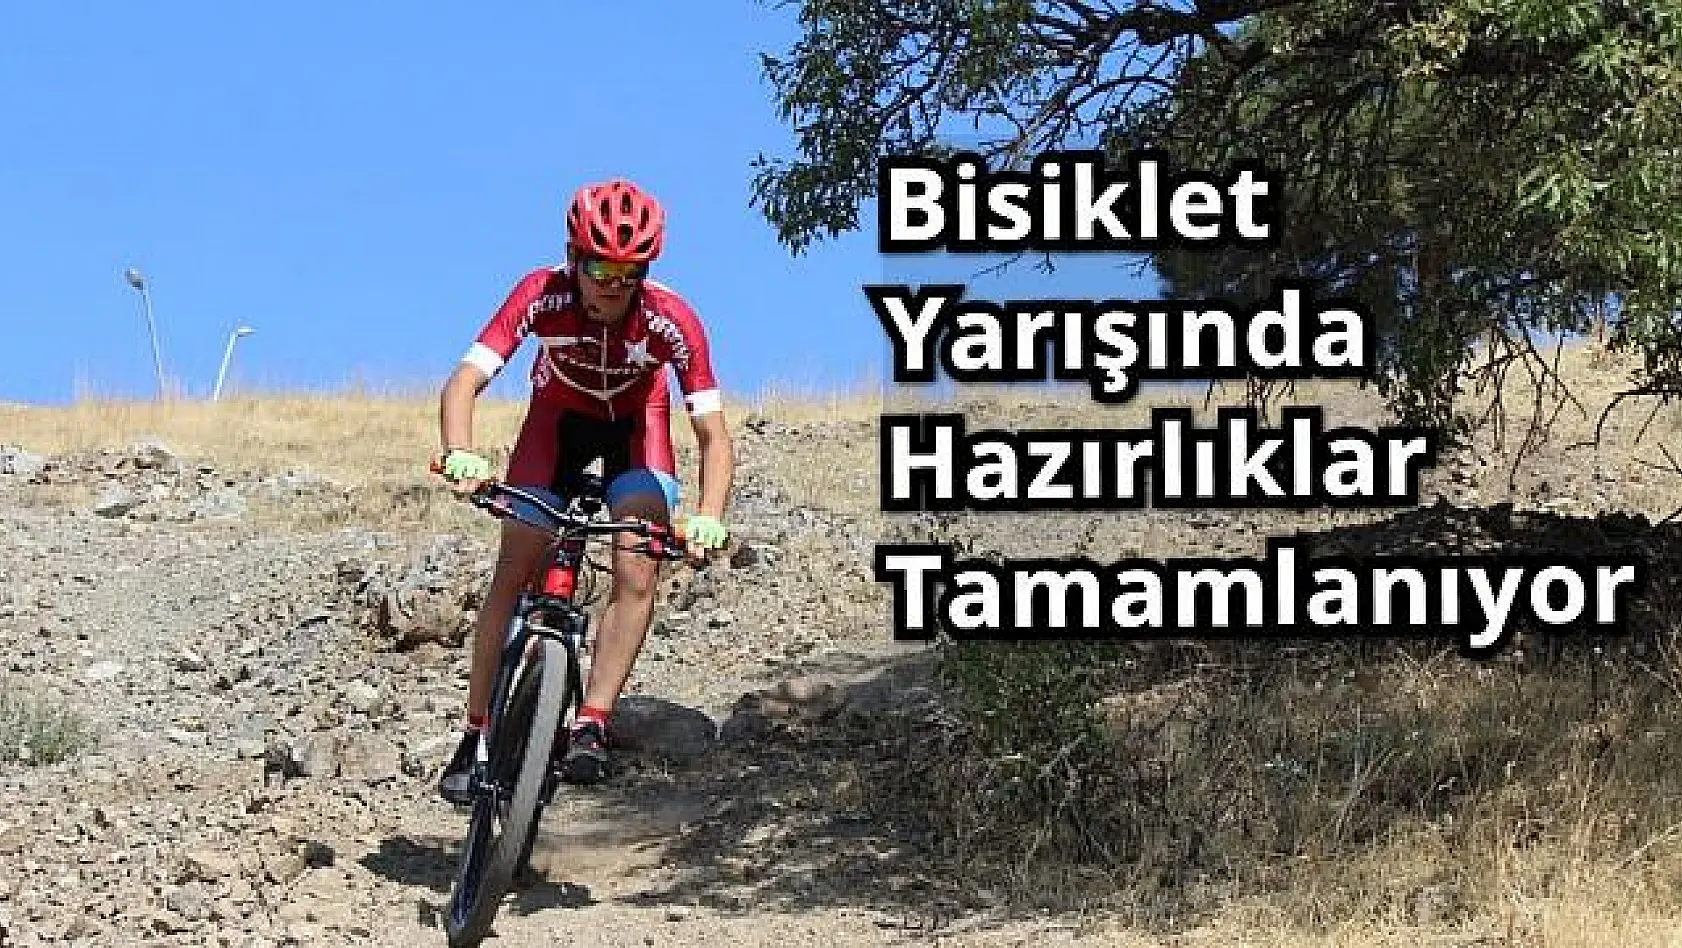 Güneydoğu Anadolu'nun Bisikletçileri Elazığ'da Buluşacak